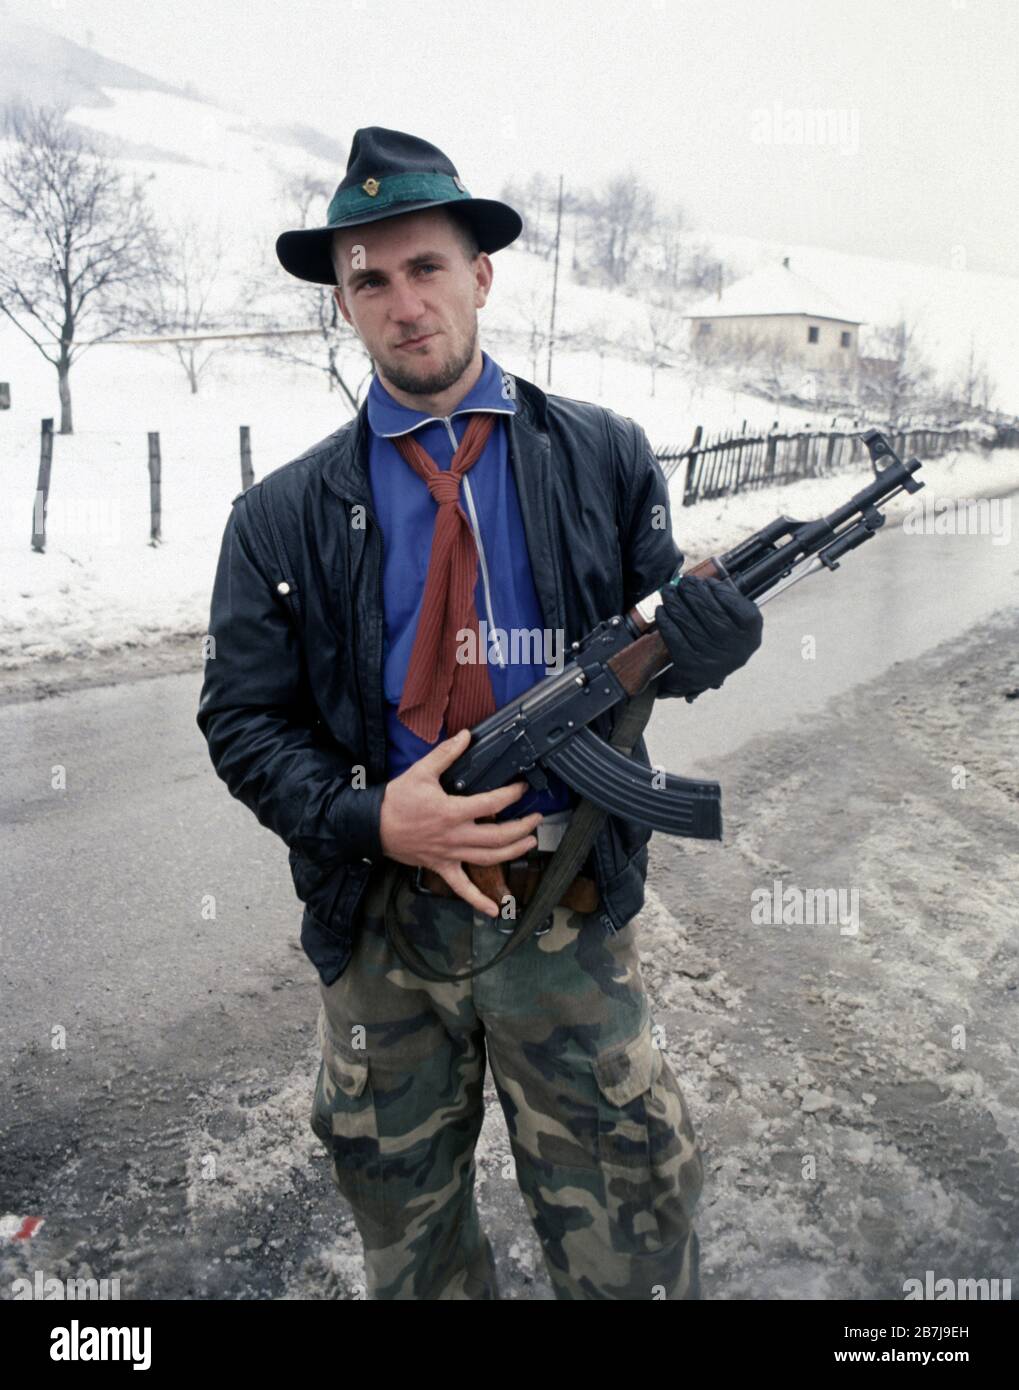 20 gennaio 1994 durante la guerra in Bosnia centrale: Un soldato musulmano bosniaco vestito casualmente mostra il suo fucile d'assalto Zastava M70 appena a nord di Lisac. Foto Stock